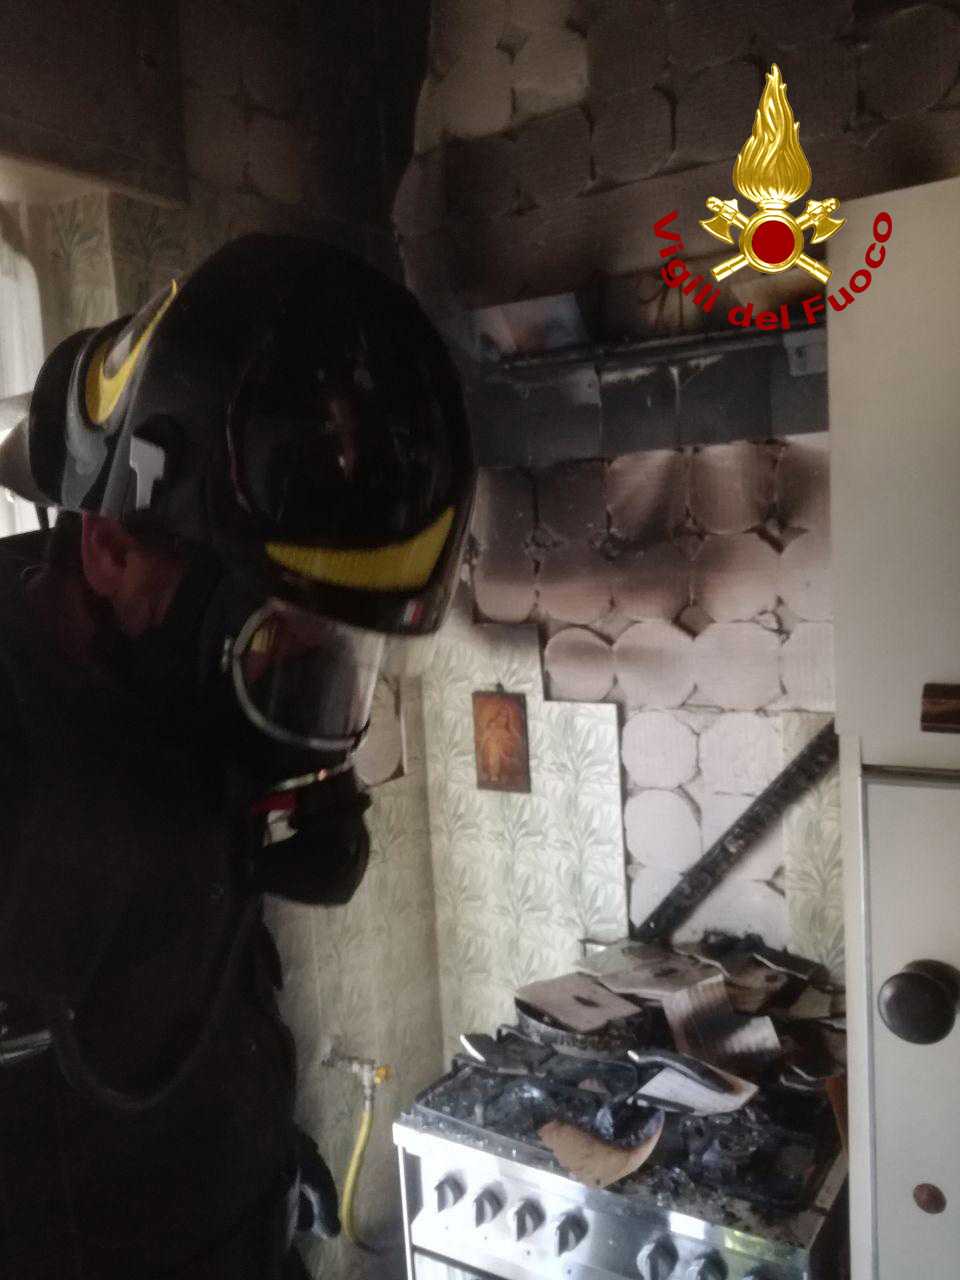 Famiglie in preda al panico per incendio appartamento a Crotone, tempestivo intervento dei VVF